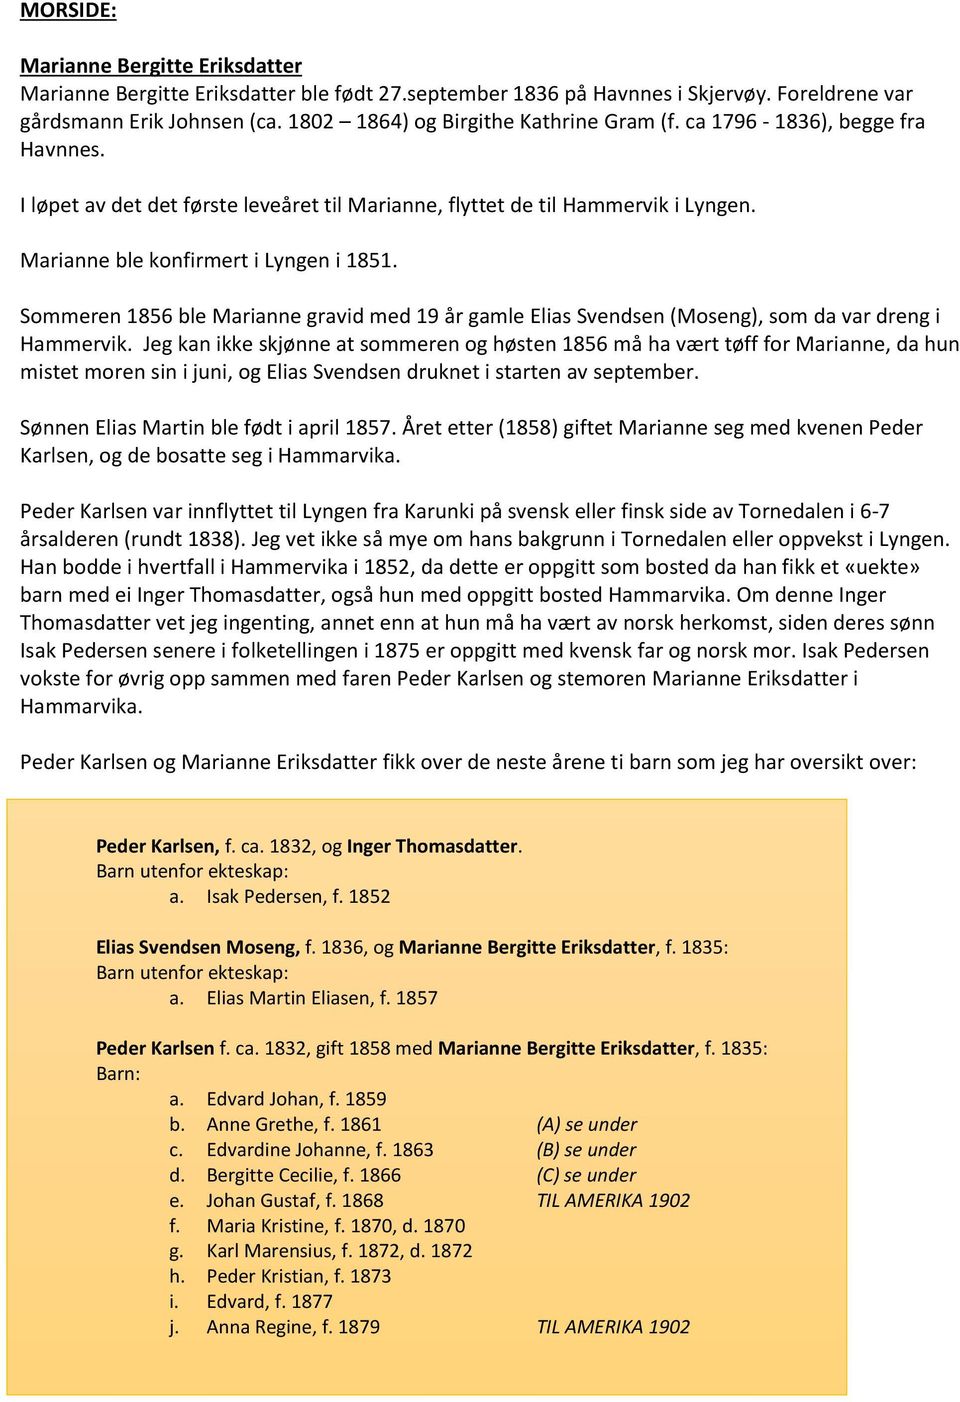 Sommeren 1856 ble Marianne gravid med 19 år gamle Elias Svendsen (Moseng), som da var dreng i Hammervik.